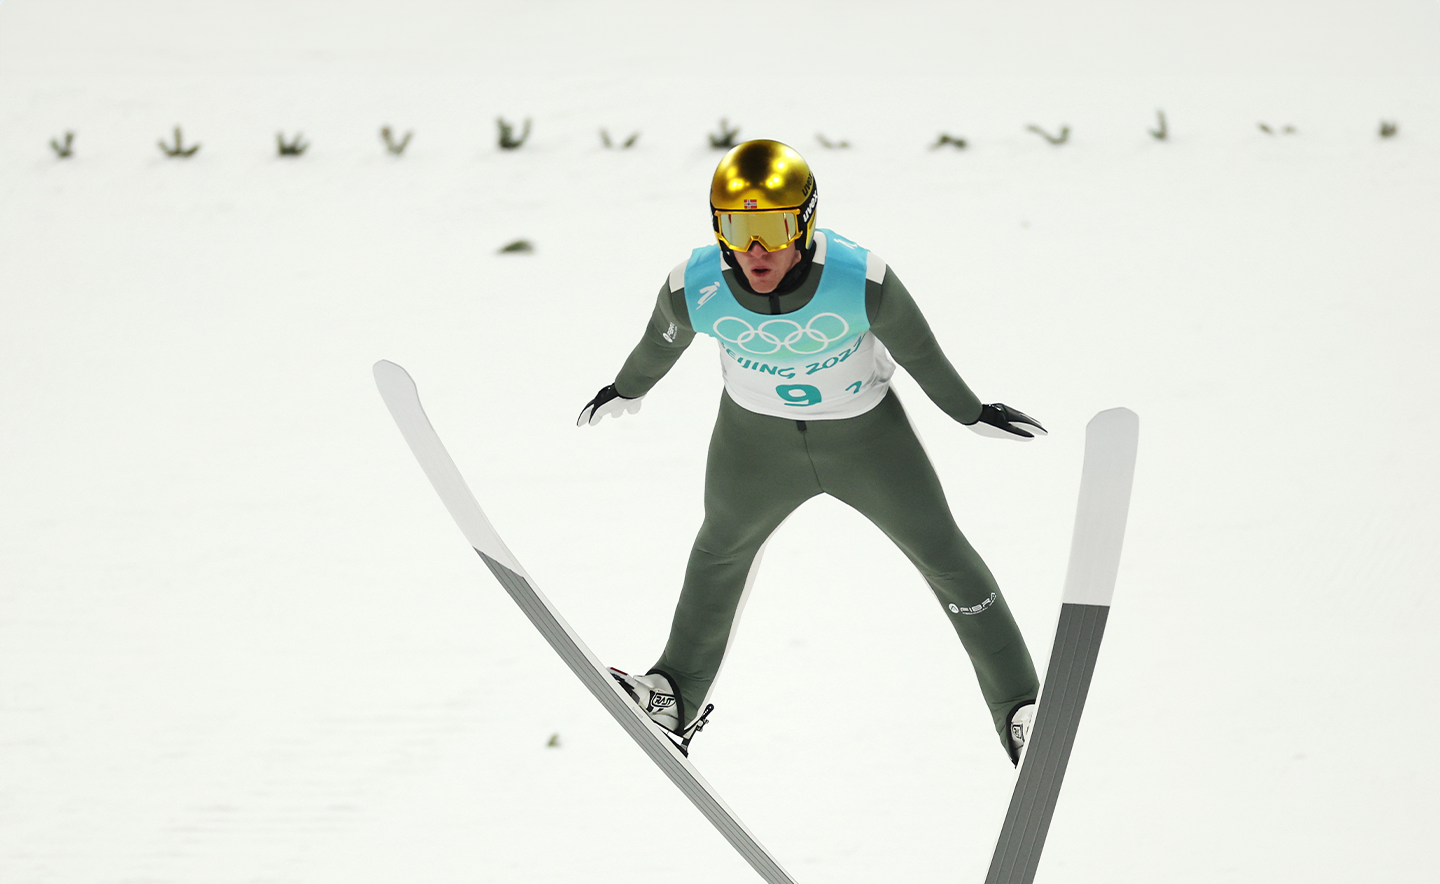 ZHANGJIAKOU, CINA - 14 FEBBRAIO: Daniel Andre Tande del Team Norway gareggia durante la prova di salto con gli sci maschile nel giorno 10 delle Olimpiadi invernali di Pechino 2022 al National Ski Jumping Centre il 14 febbraio 2022 a Zhangjiakou, Cina. (Foto di Maja Hitij/Getty Images)